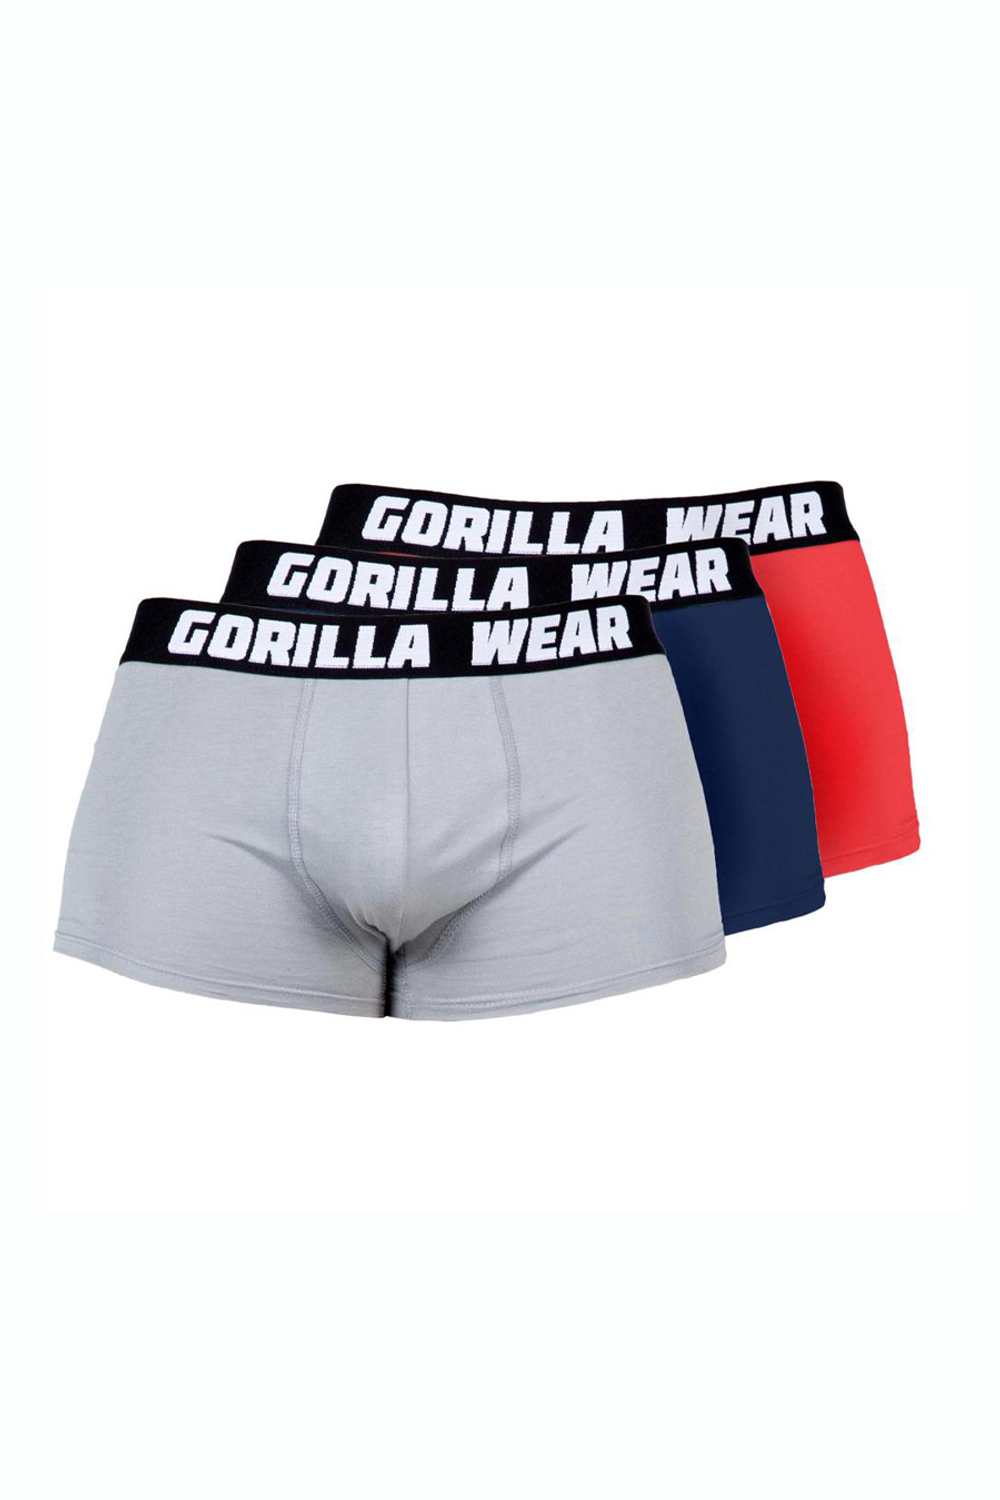 Комплект мужских трусов-боксеров Gorilla wear